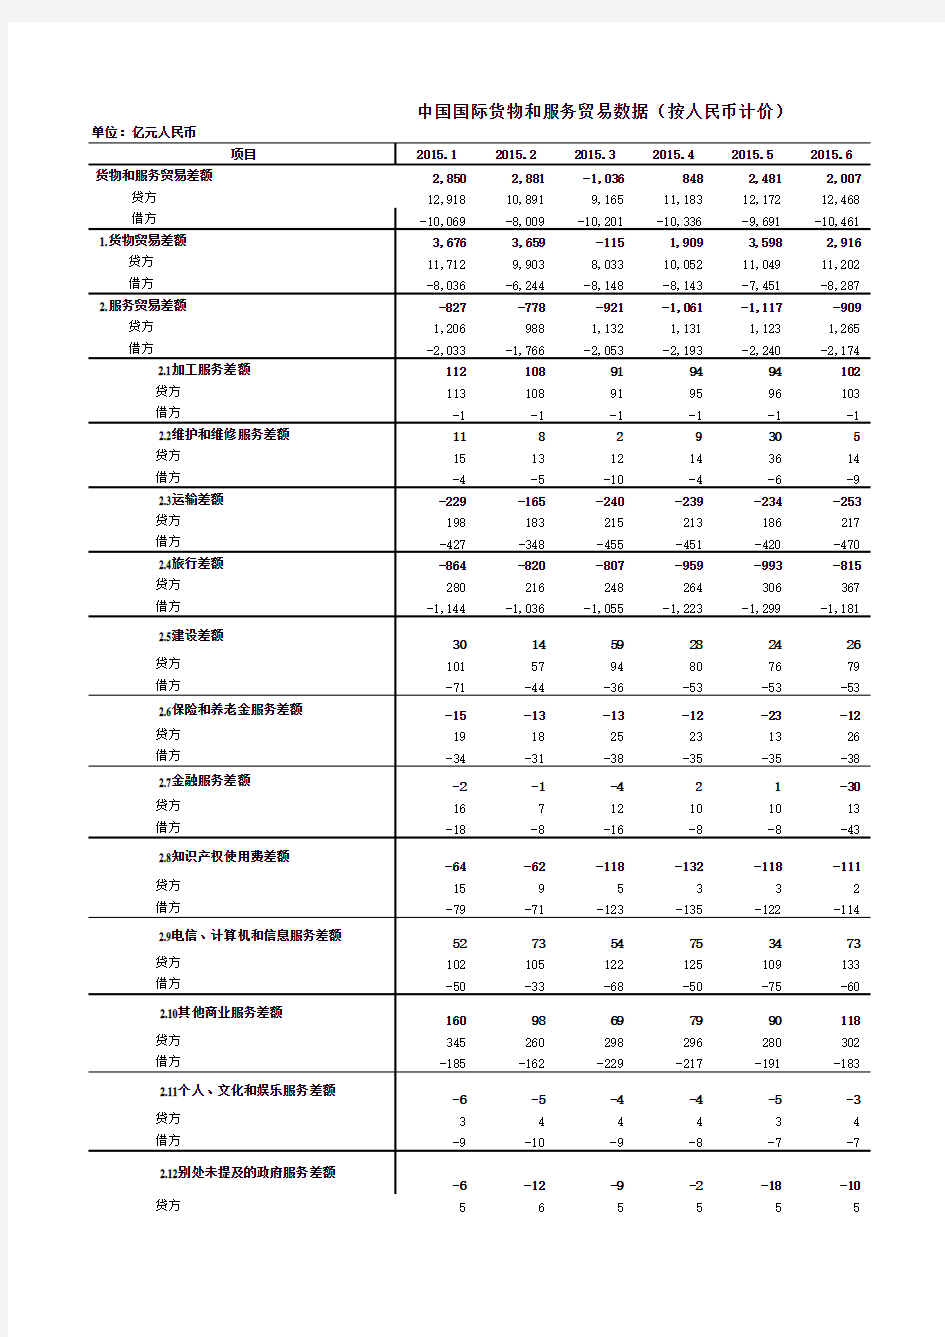 中国国际货物和服务贸易数据(更新至2016.2)